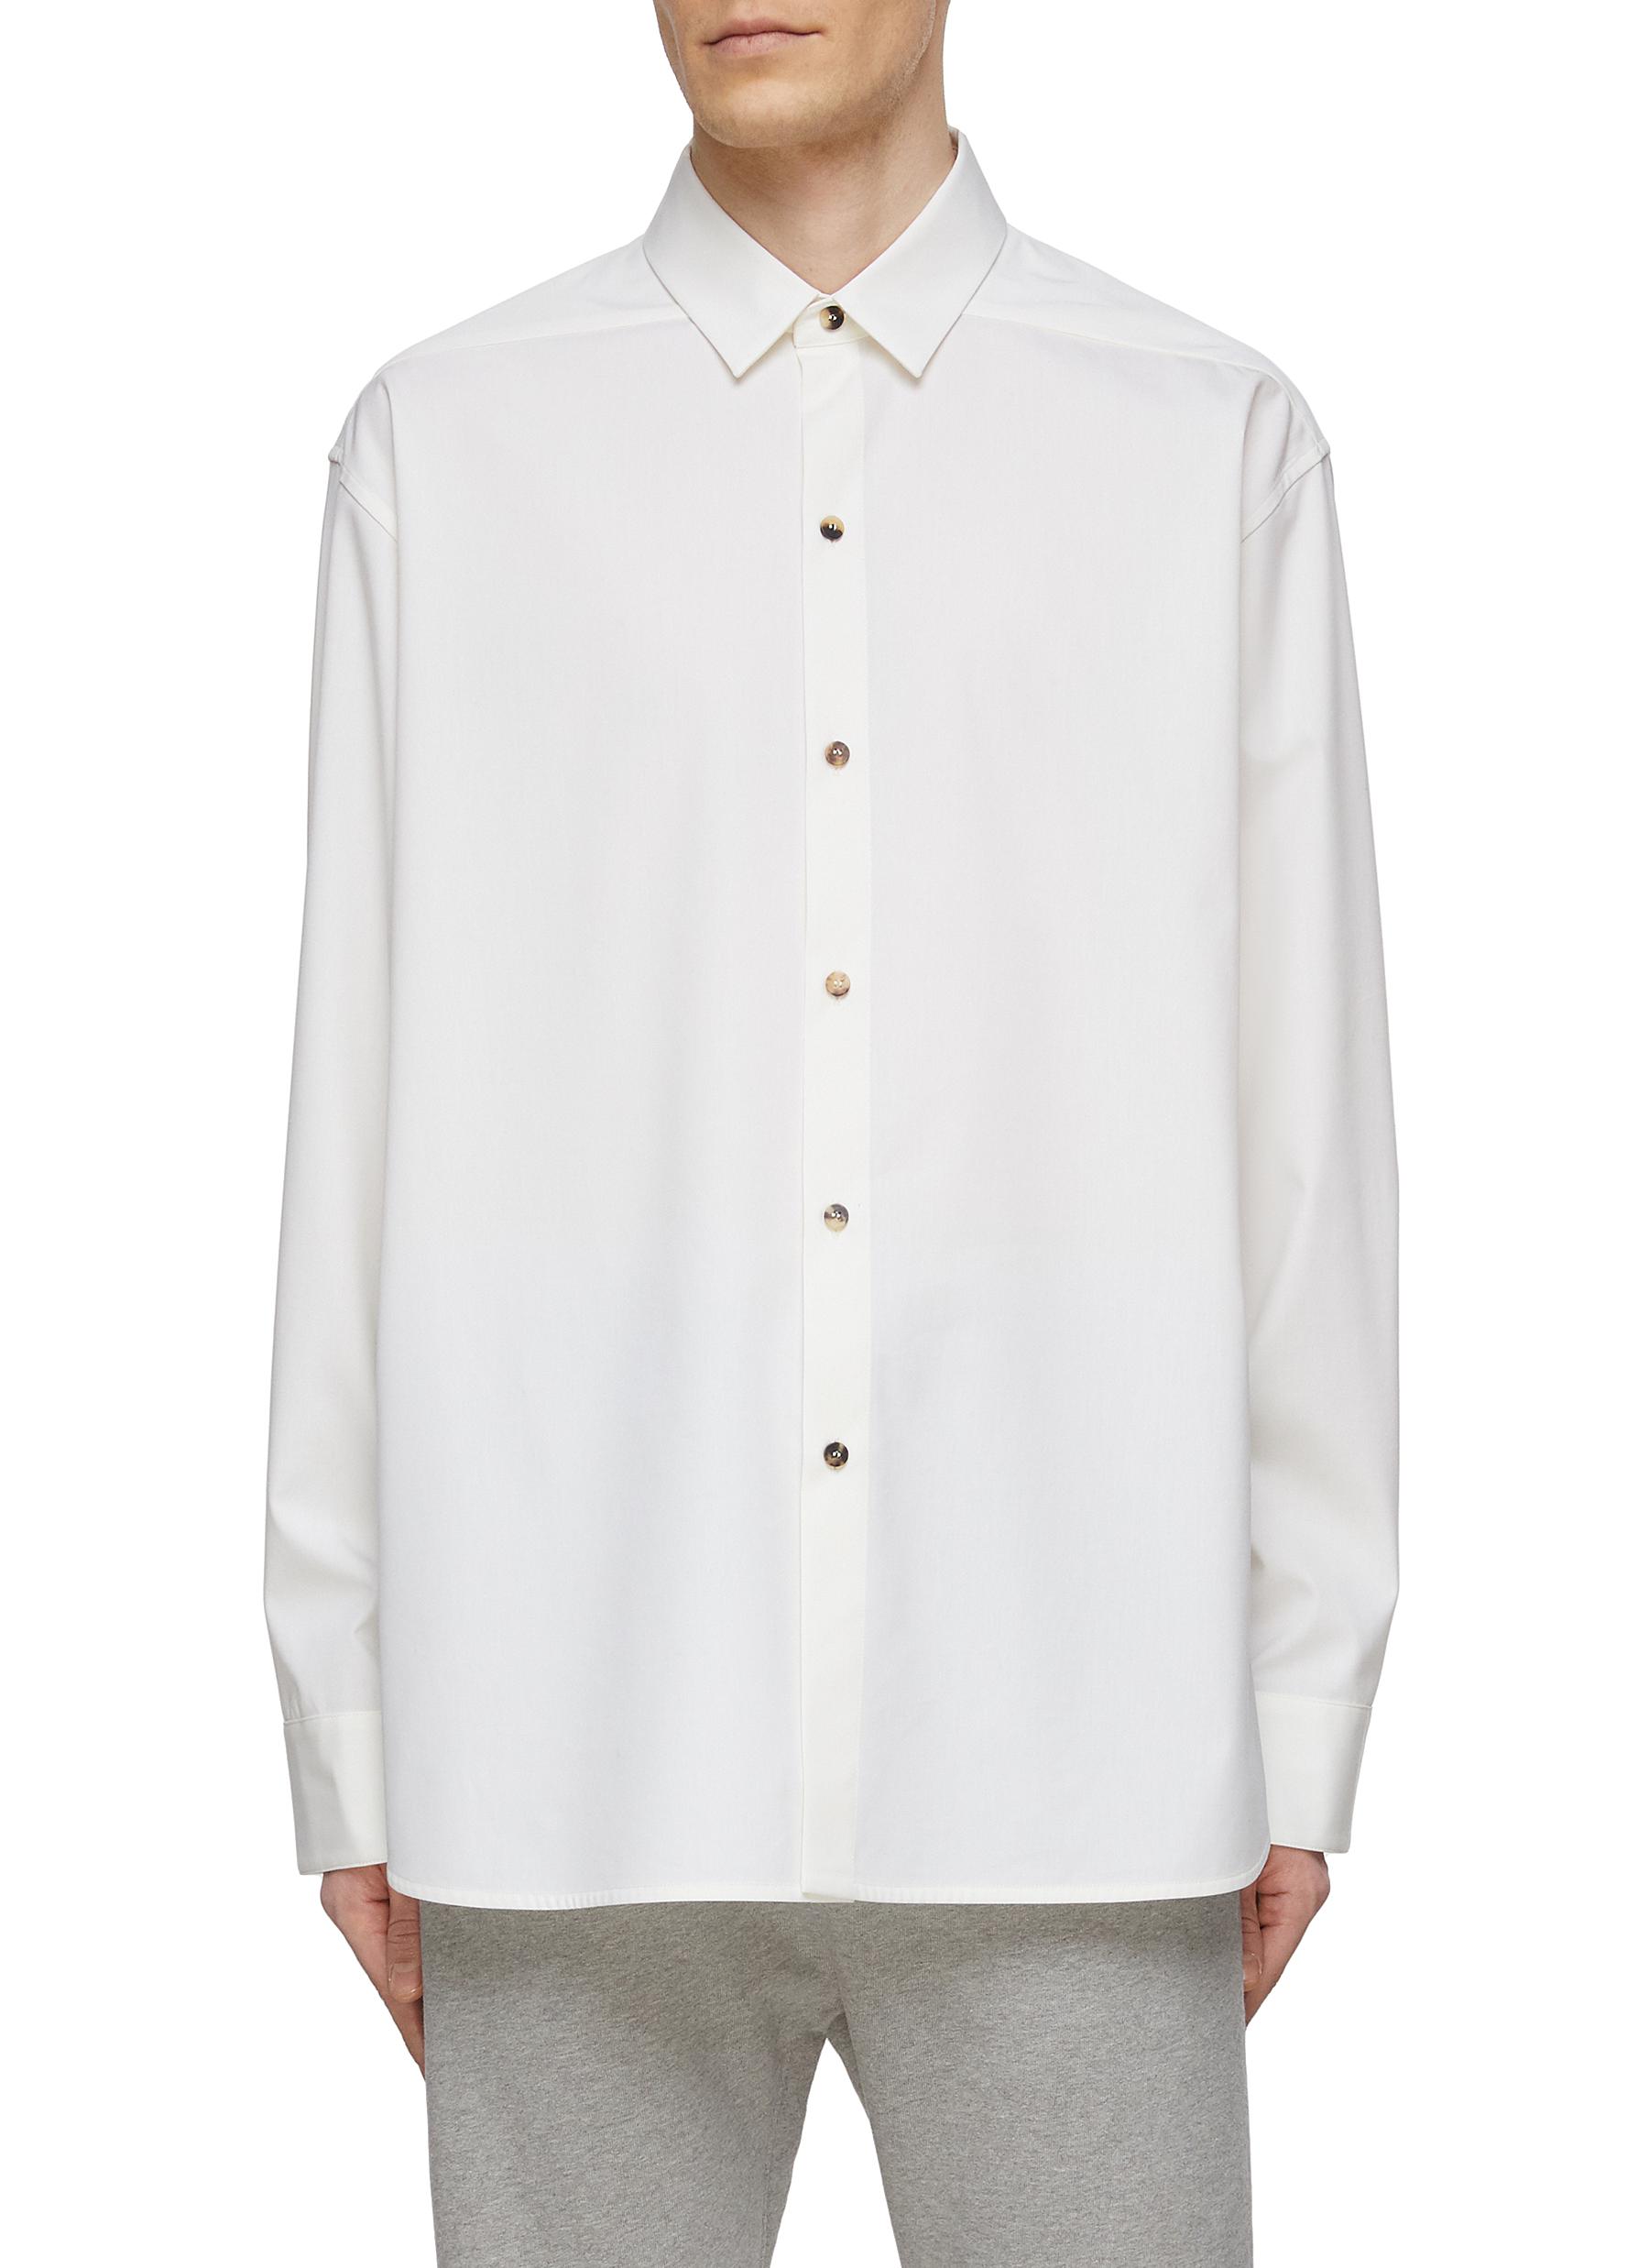 ‘Eternal' Button Front Cotton Blend Shirt